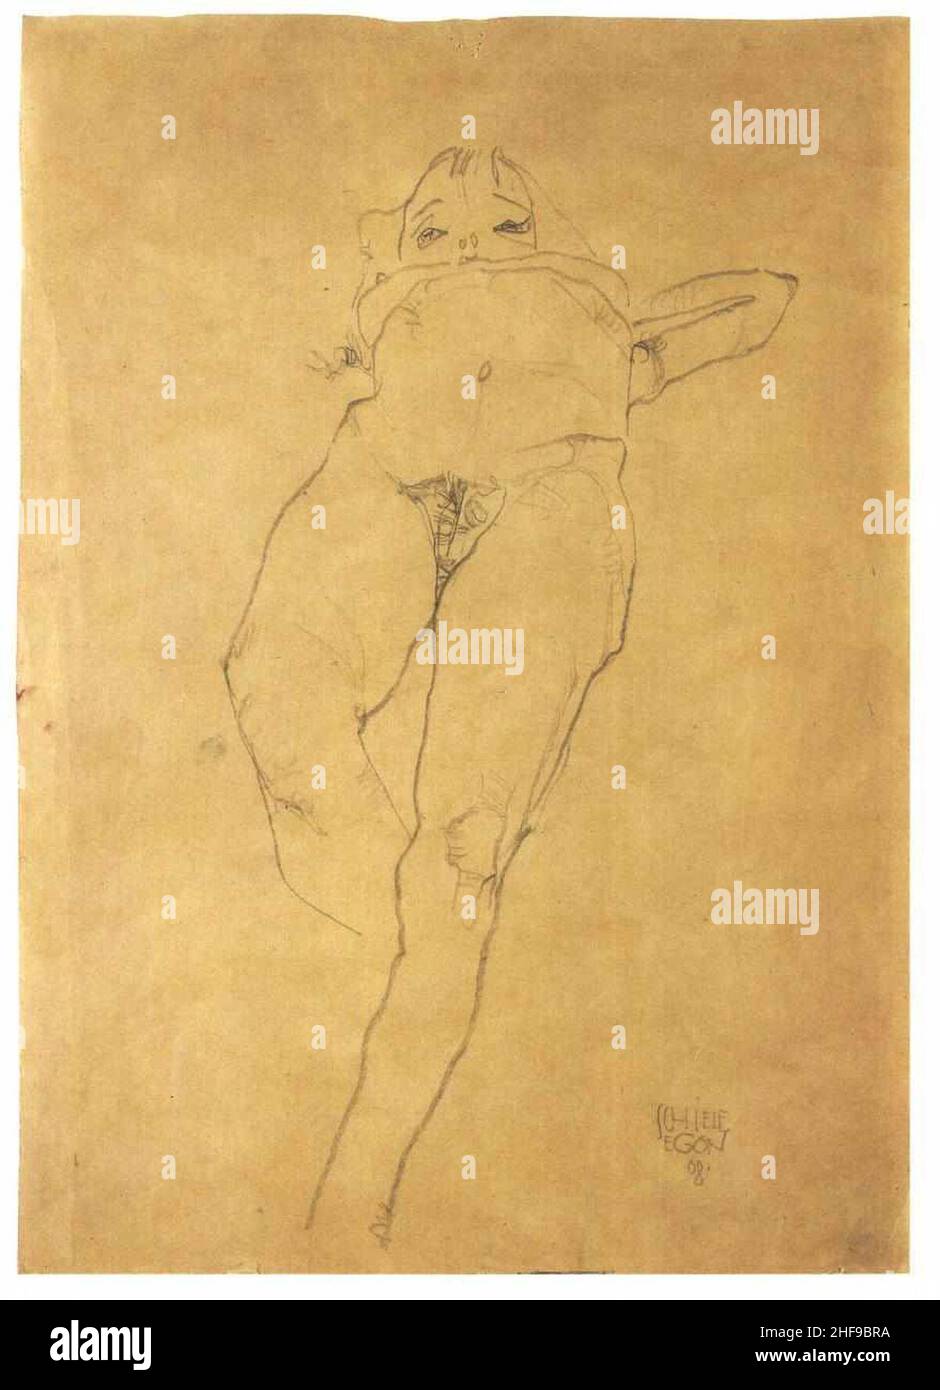 Schiele - Liegendes krankes Mädchen - 1908. Stock Photo